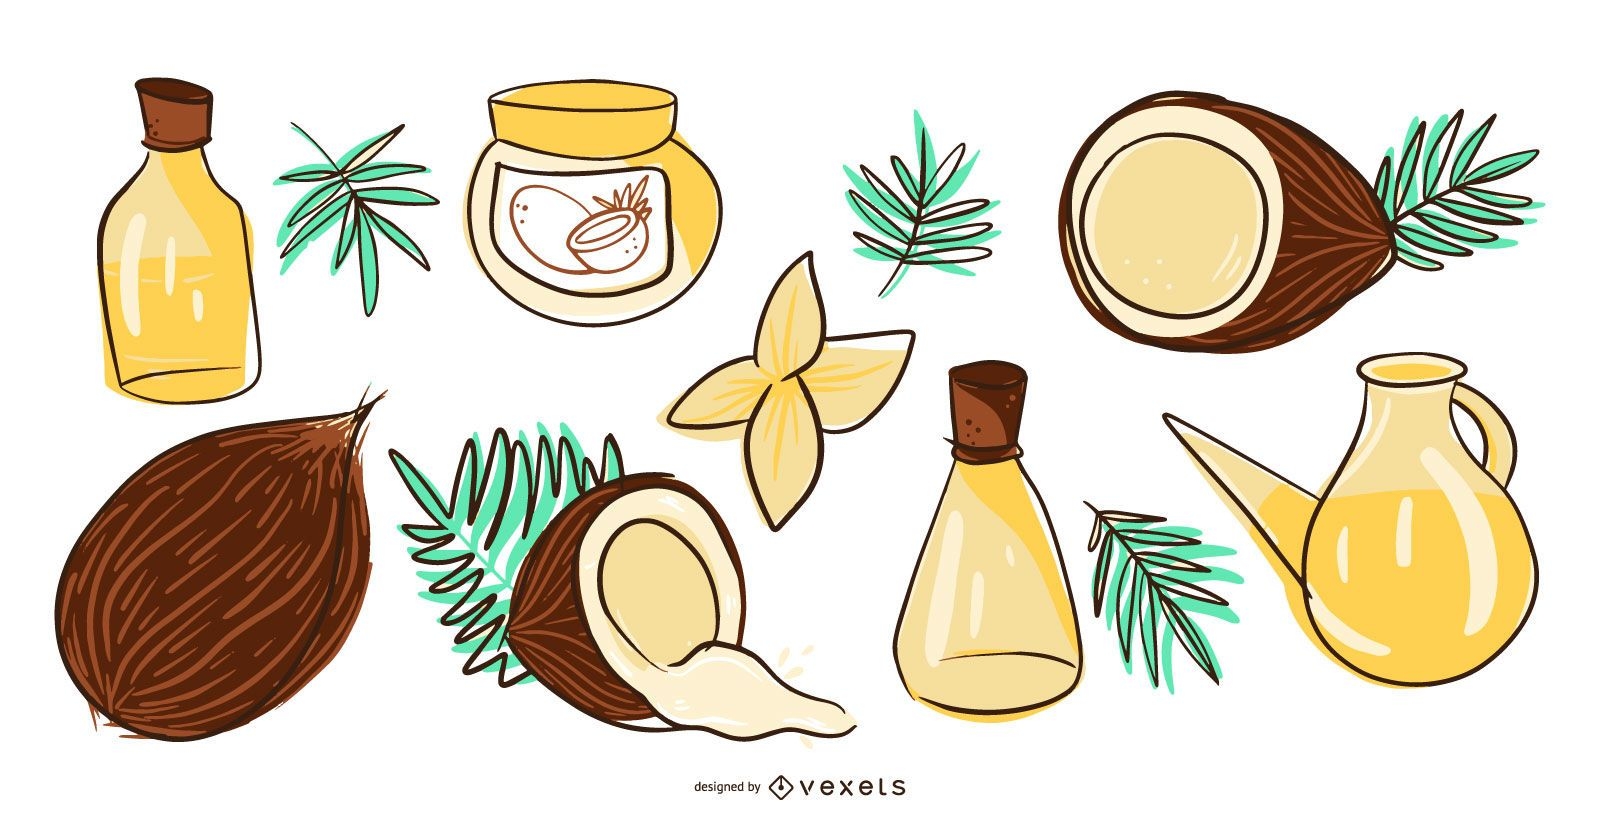 Illustrationssatz für Kokosnussprodukte